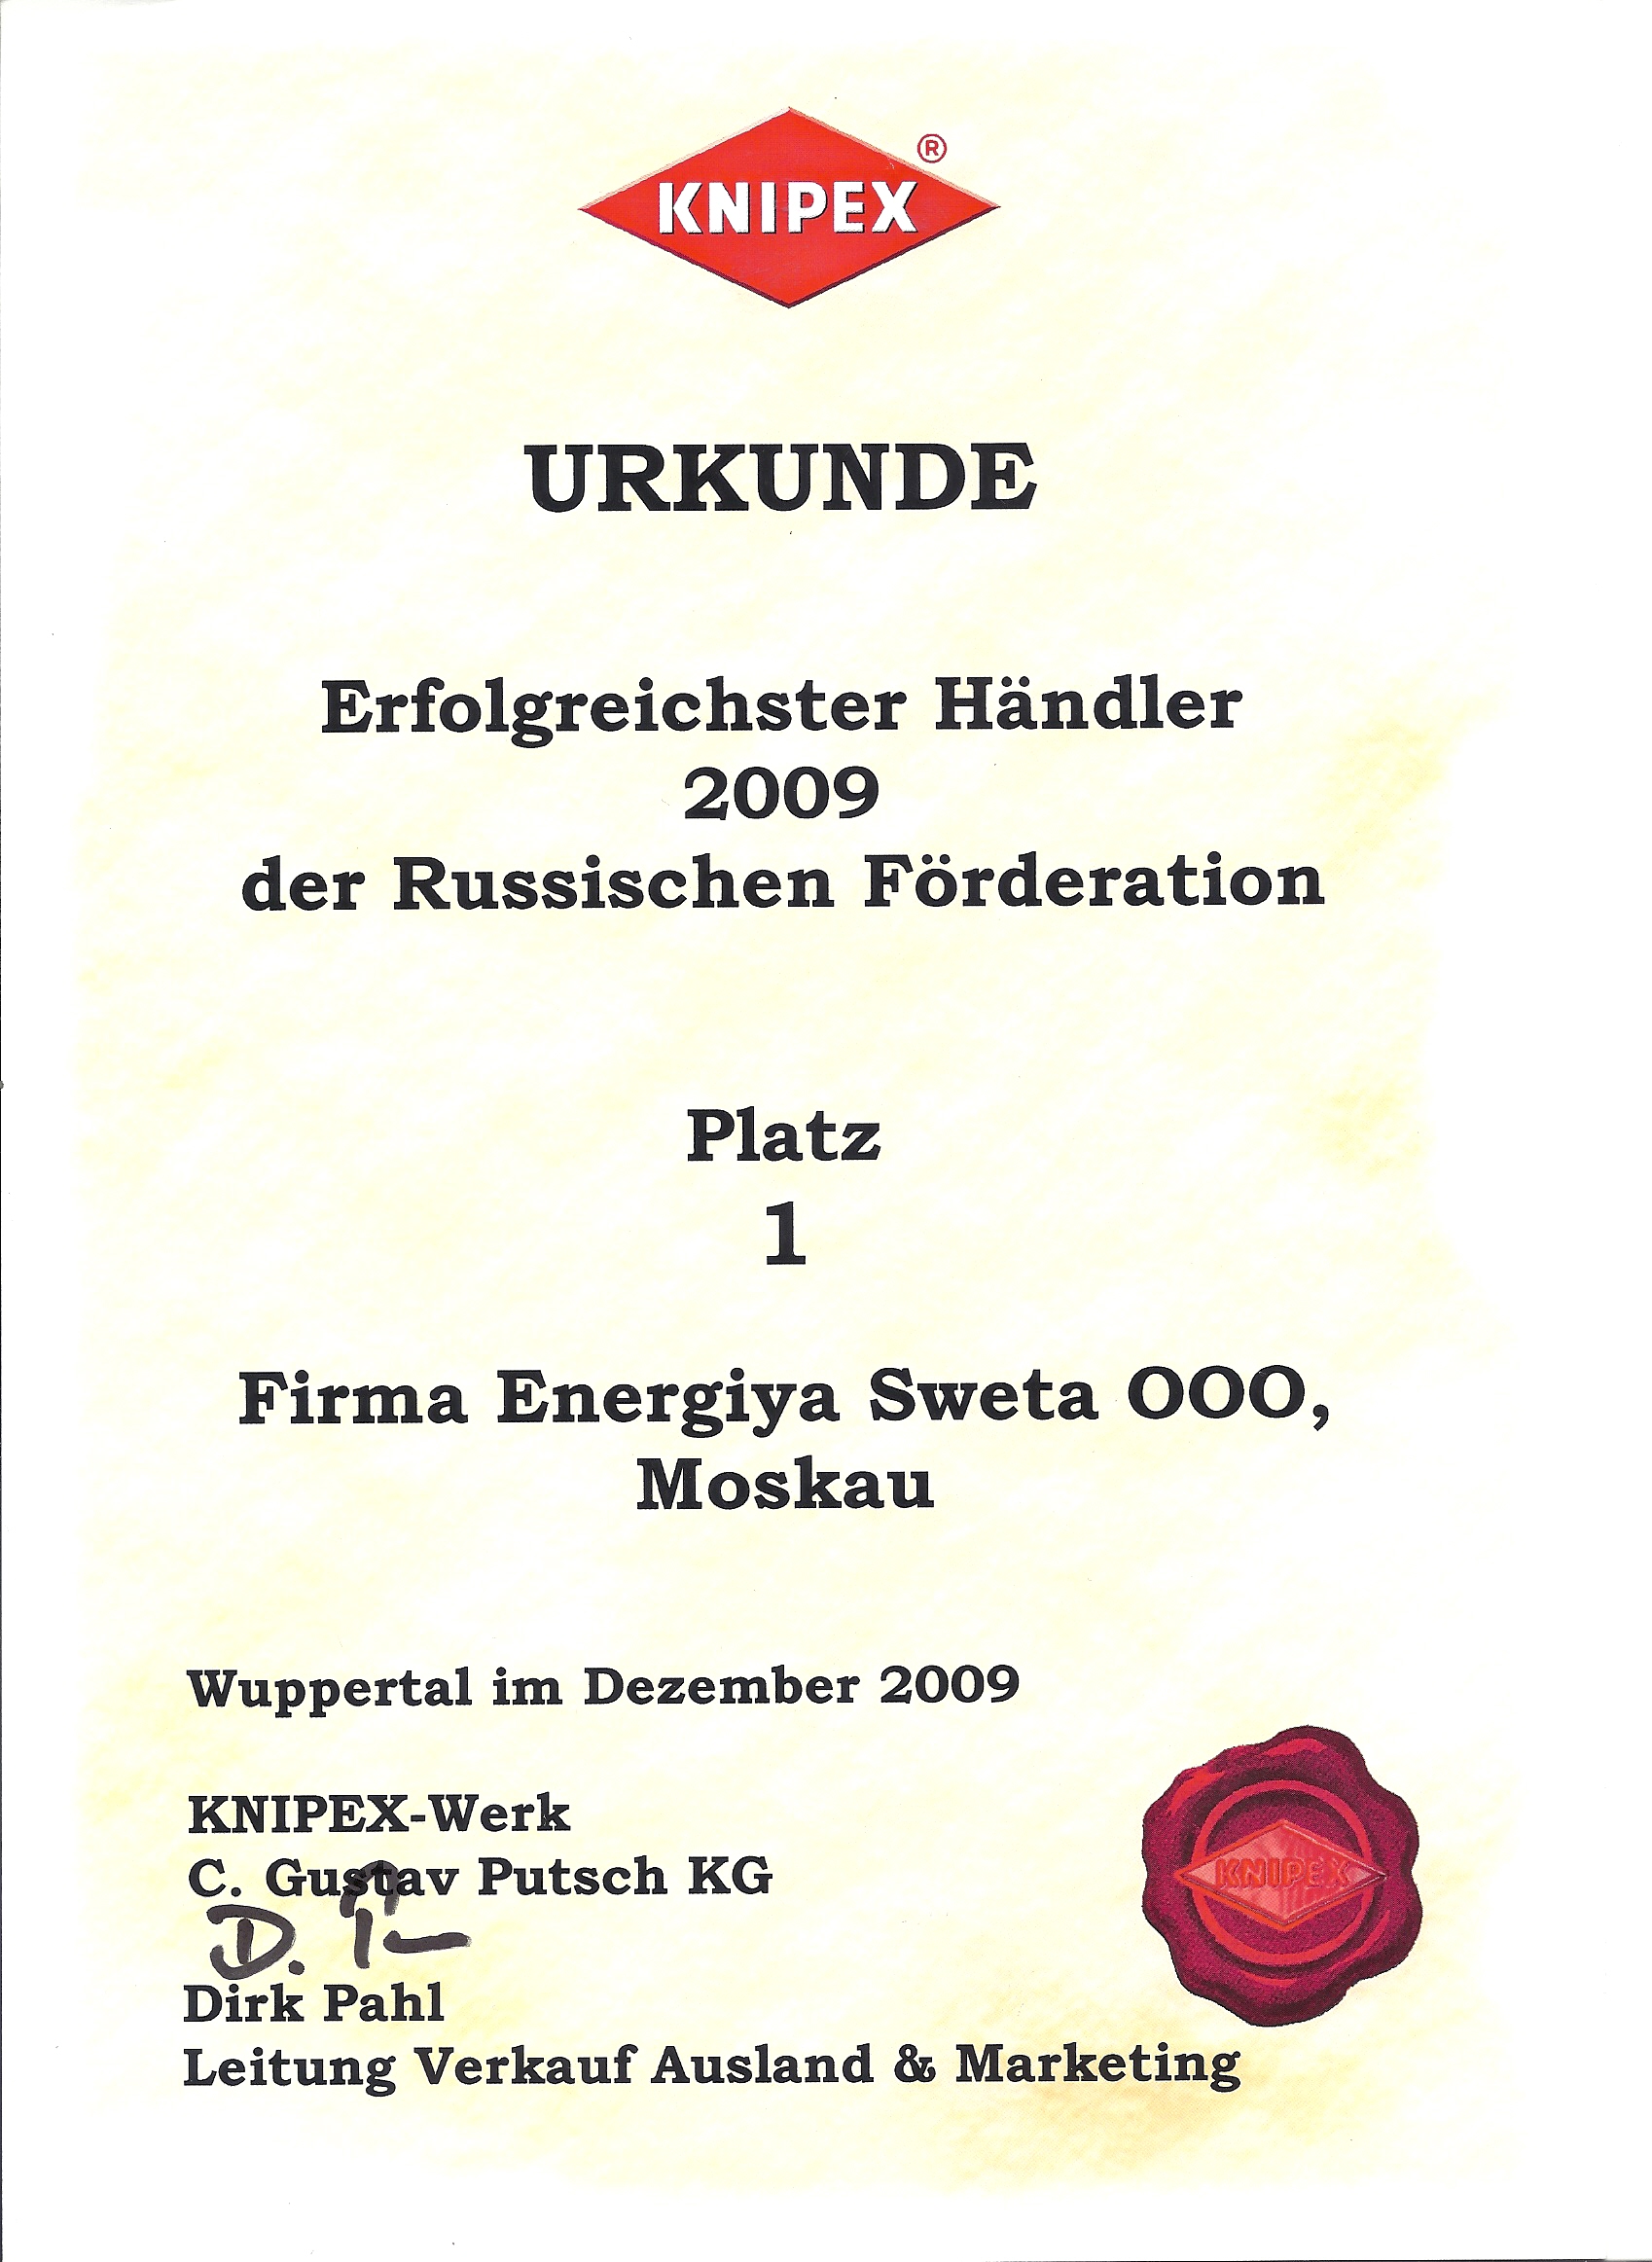 Самый успешный дилер Knipex в Российской Федерации 2009 года